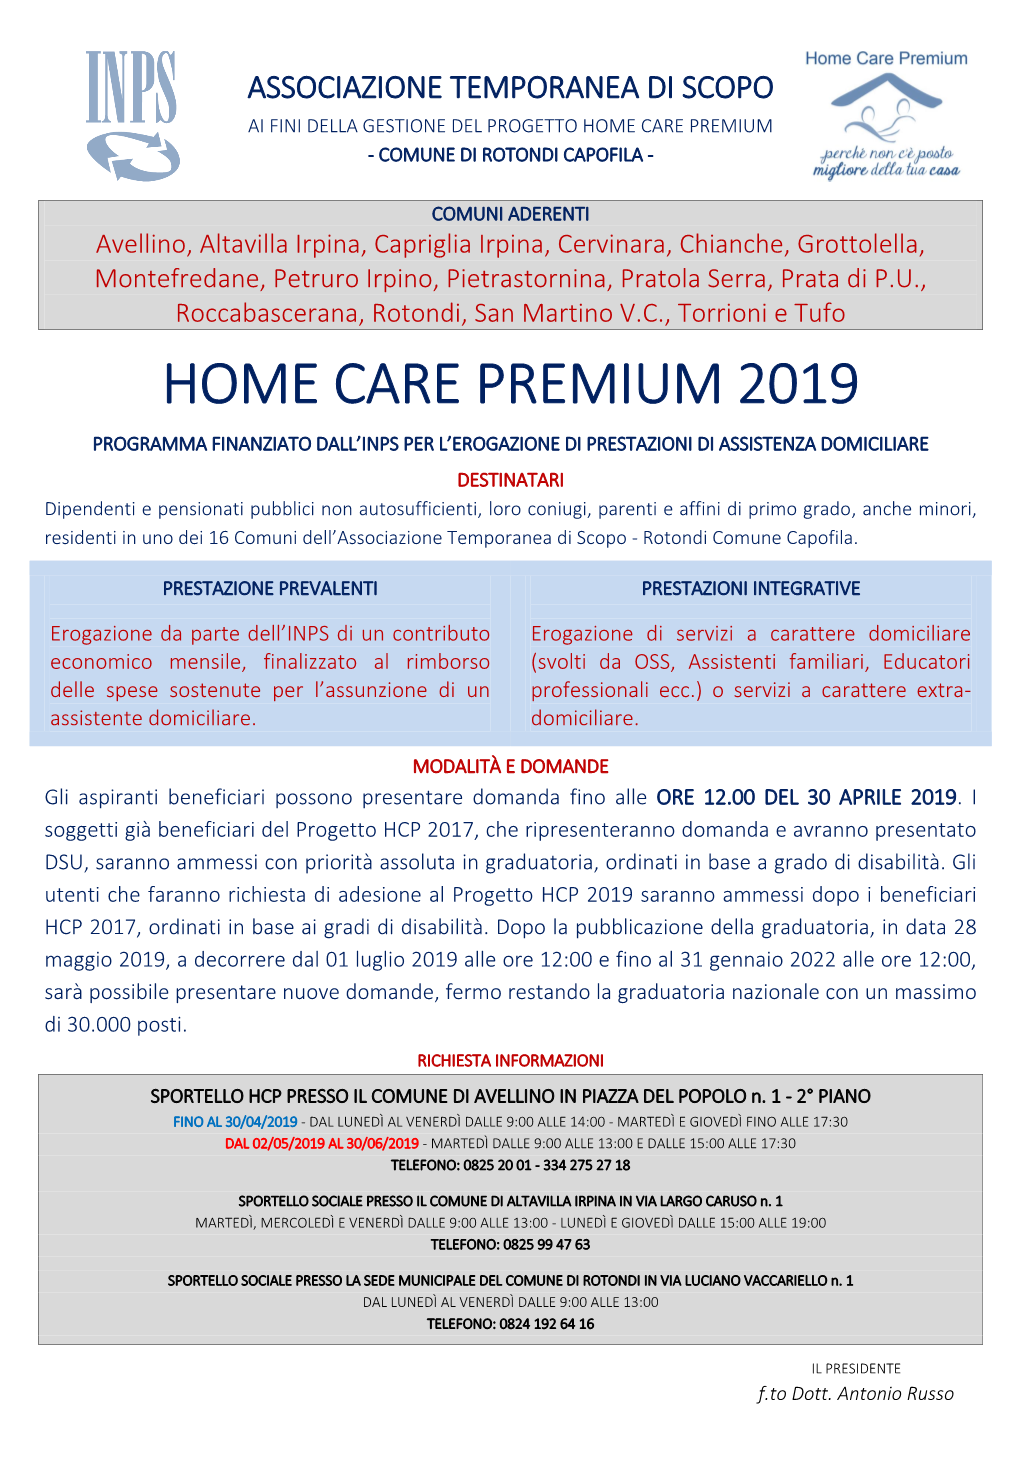 Home Care Premium 2019 Programma Finanziato Dall’Inps Per L’Erogazione Di Prestazioni Di Assistenza Domiciliare